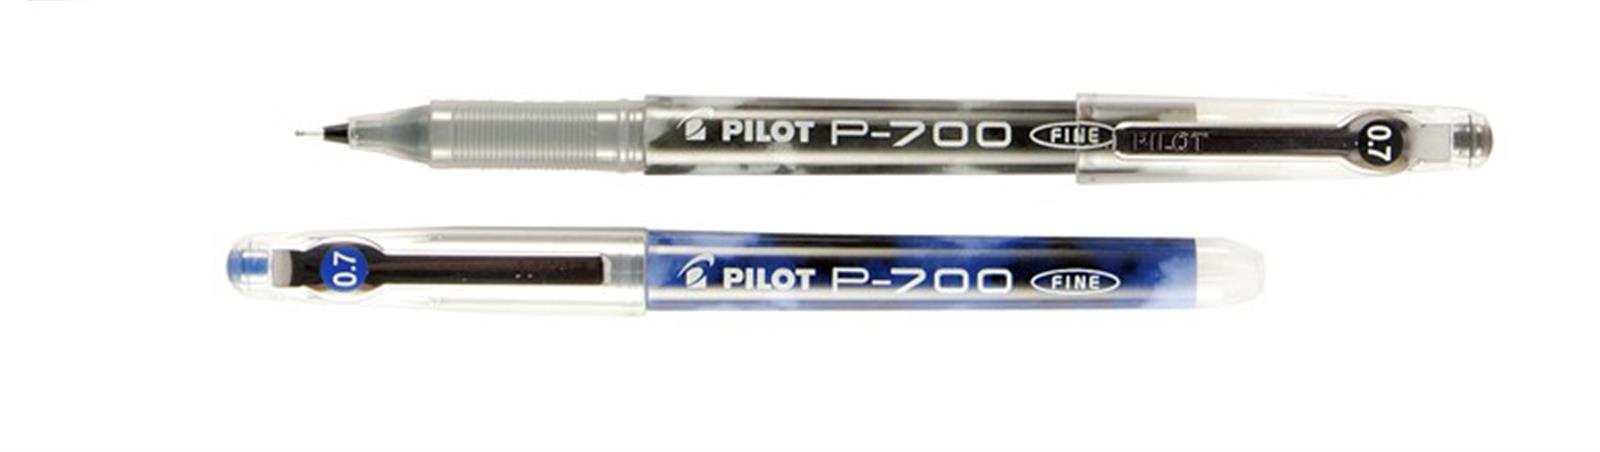 עט פיילוט P700